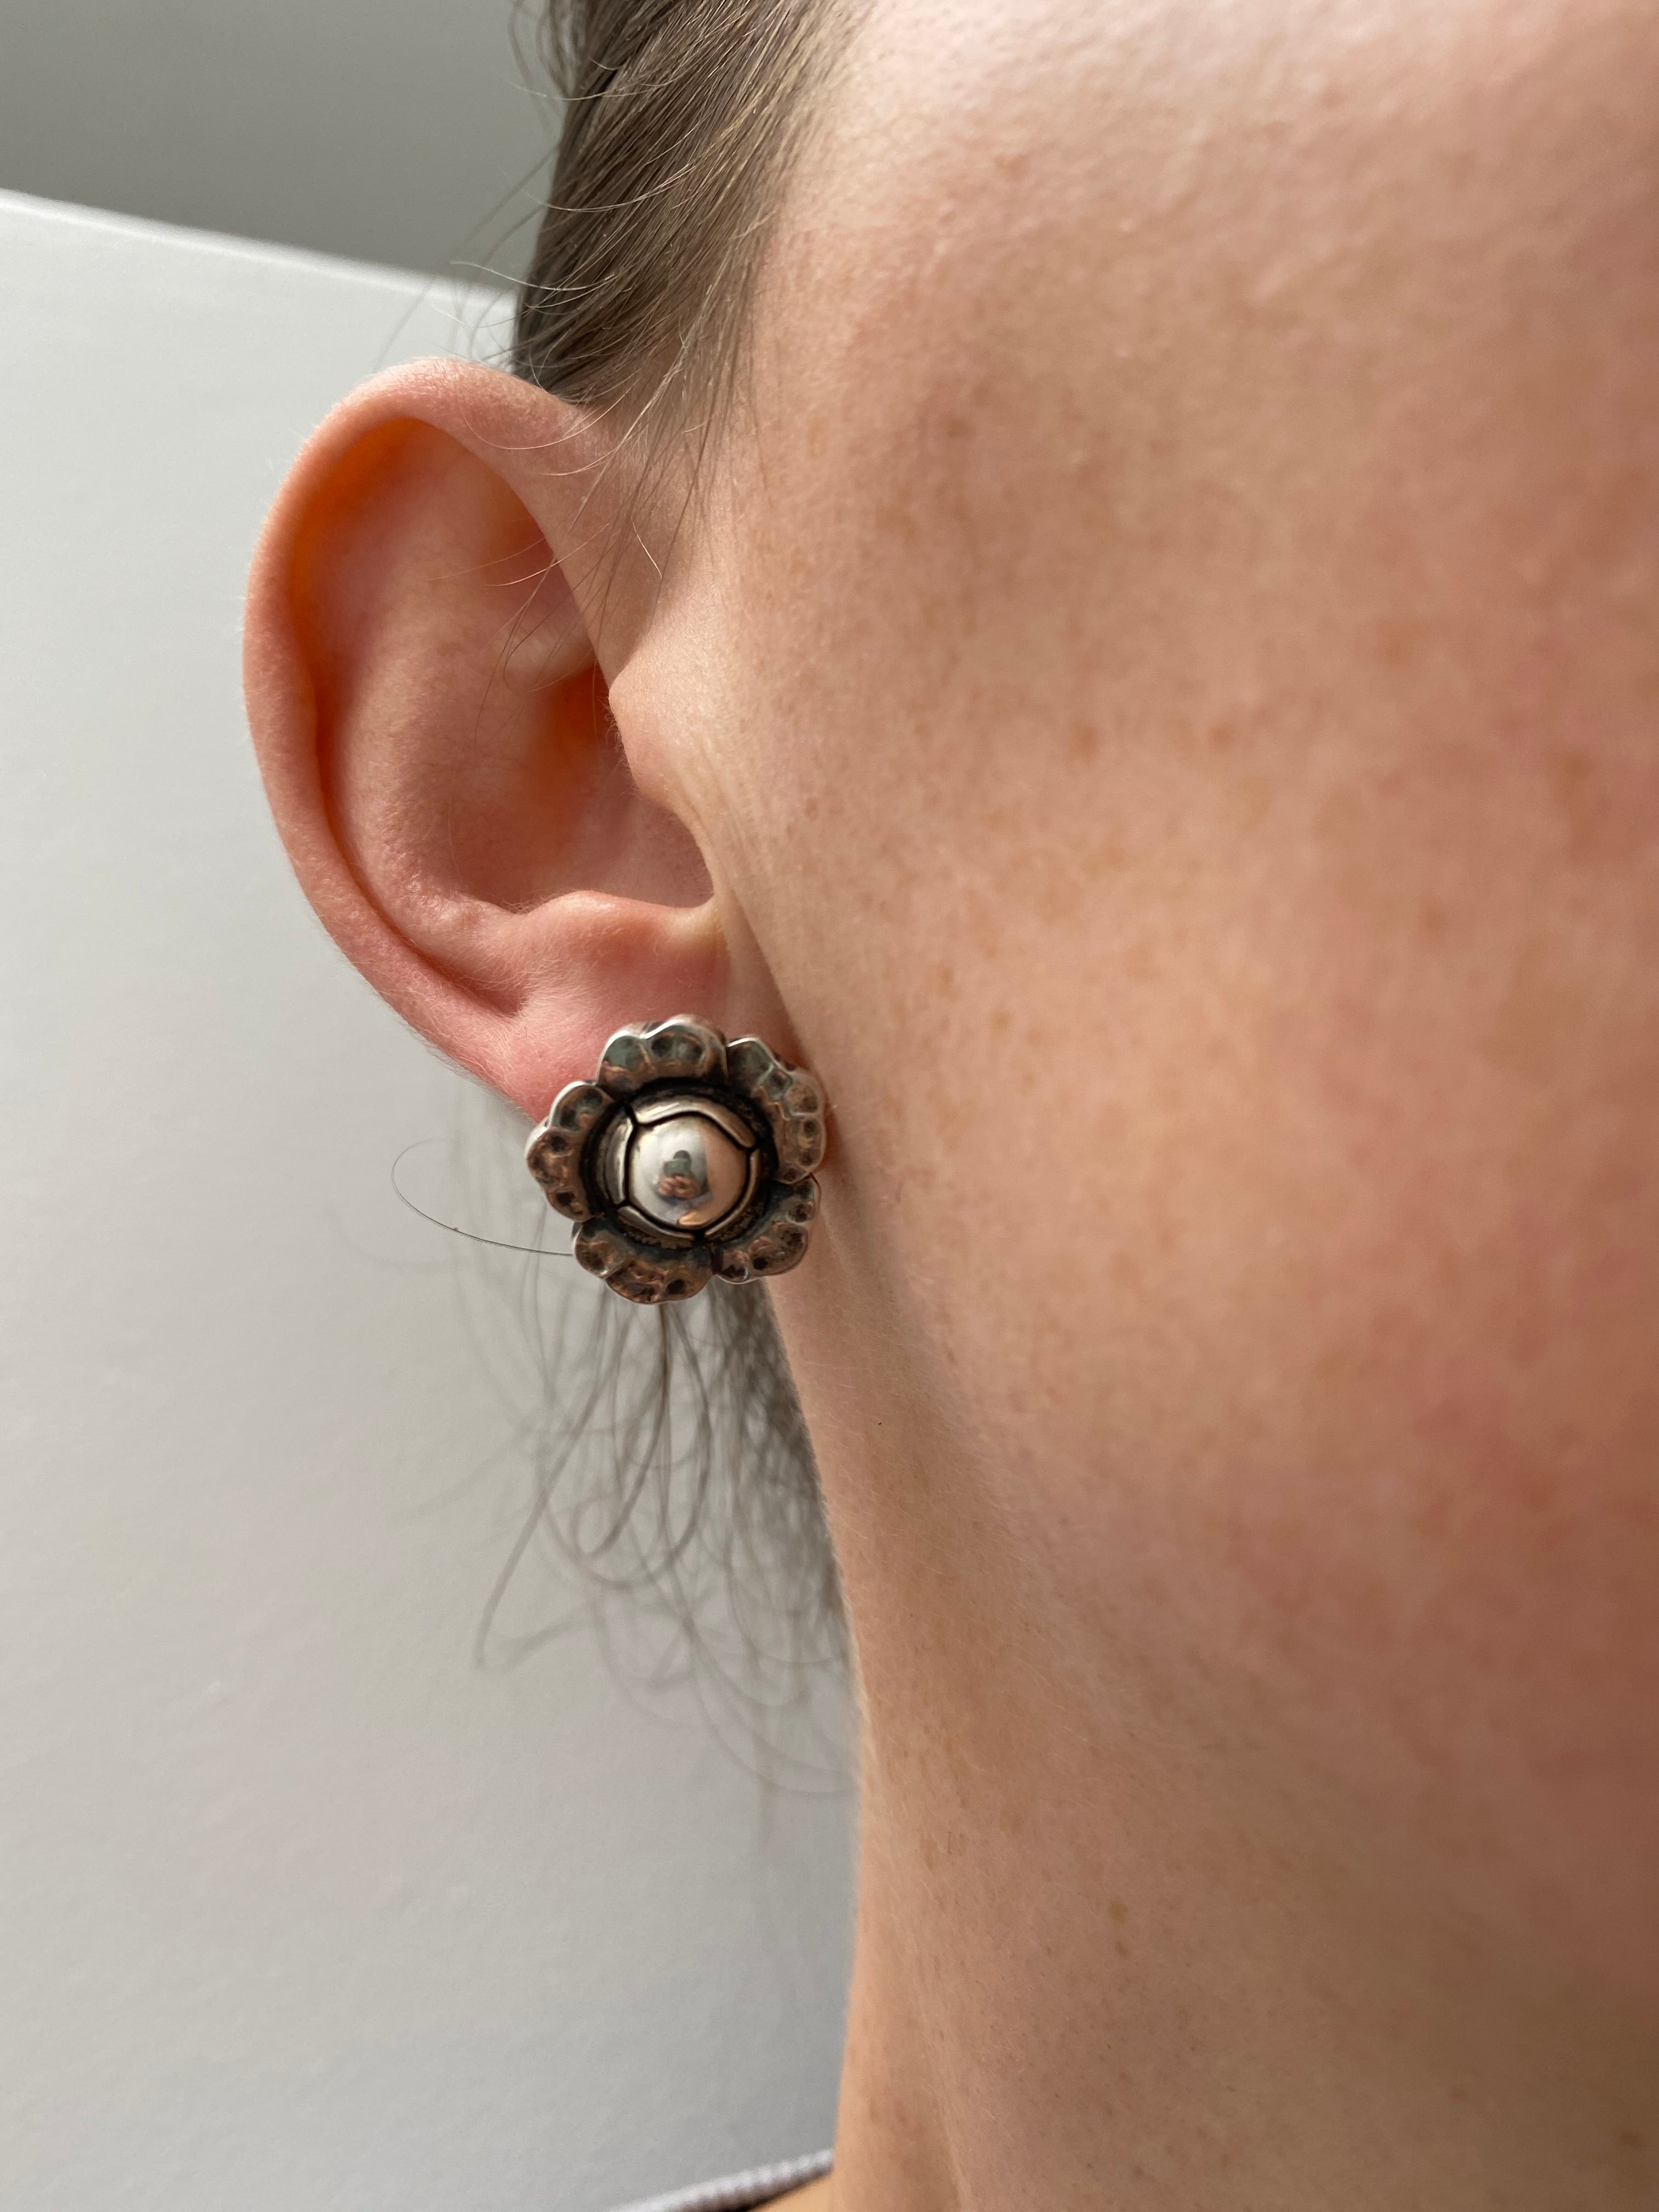 Danish Silver Flower Earrings by Georg Jensen